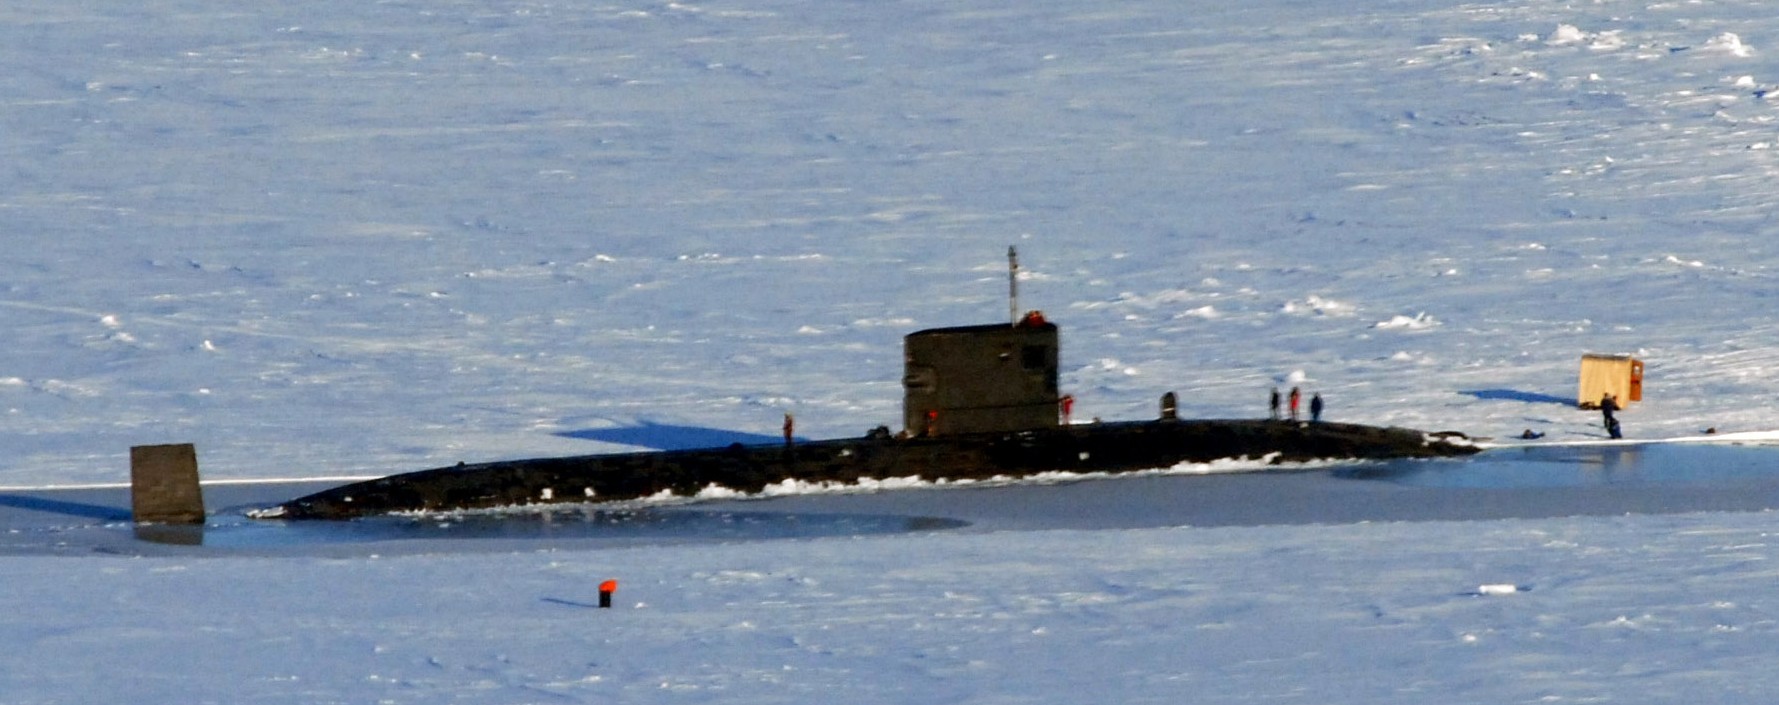 s88 hms tireless trafalgar class attack submarine hunter killer royal navy 03